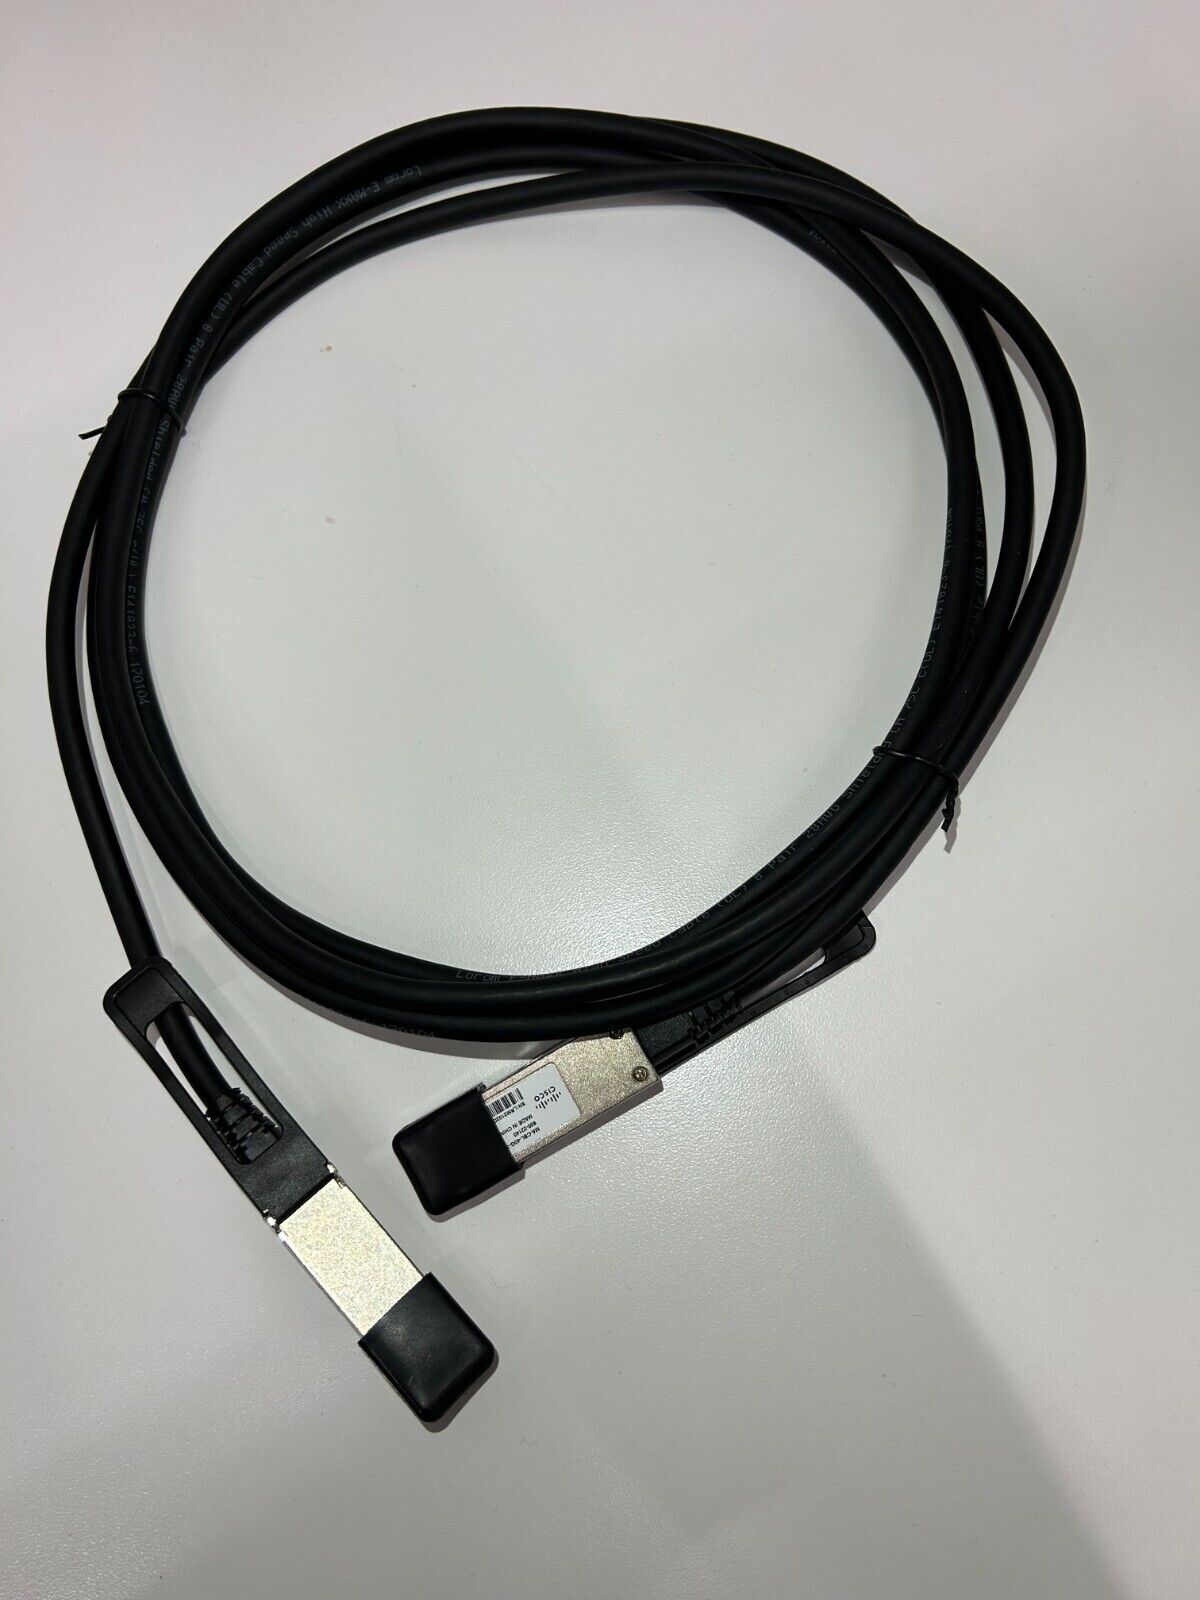 New Still in Box Genuine Cisco Meraki MS Switch Stacking Cable 3M MA-CBL-40g-3M 